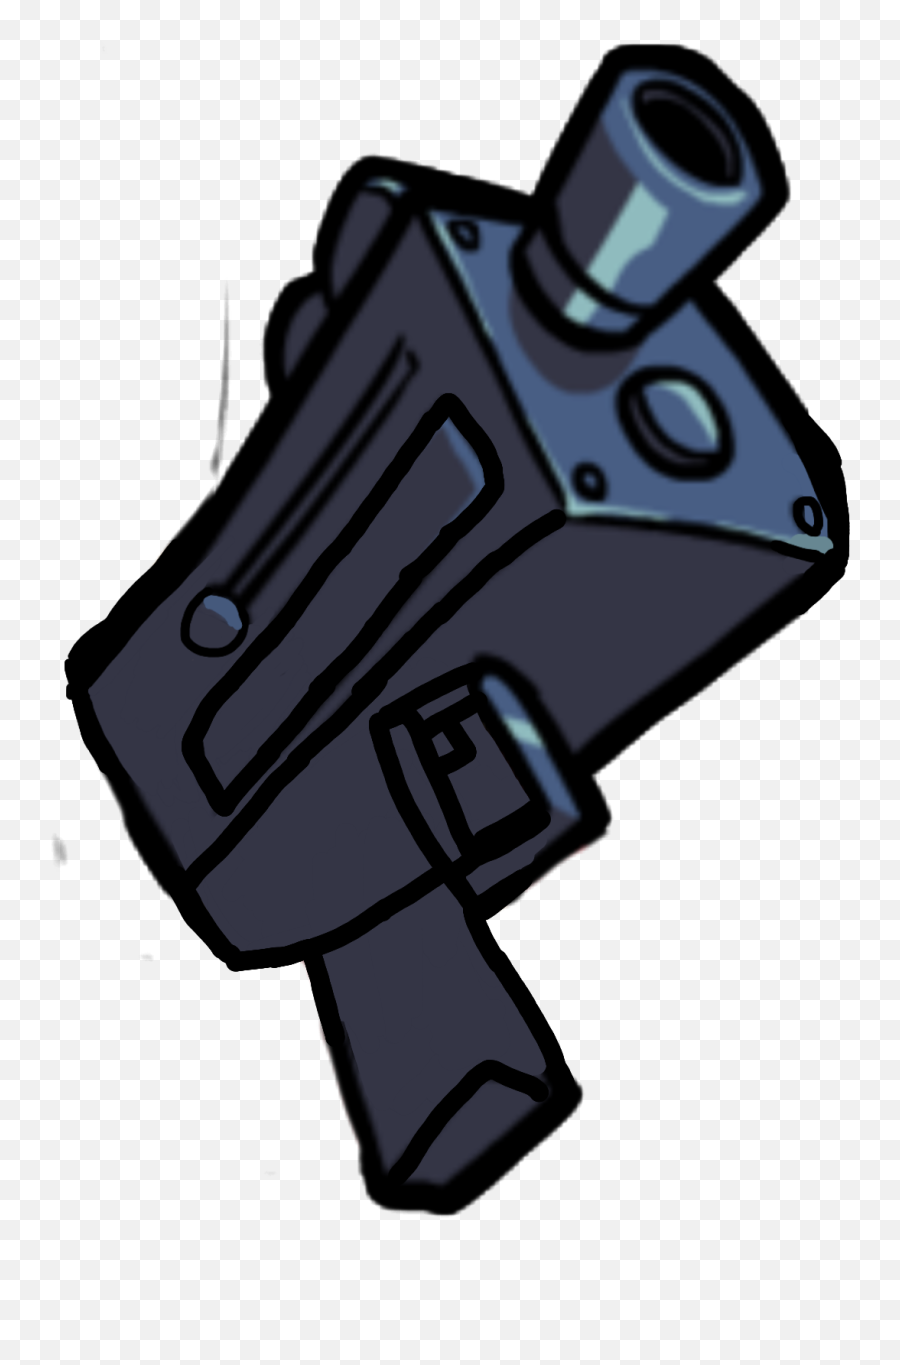 The Most Edited - Picsart Pico Gun Fnf Emoji,Diagonal Gun Emoji